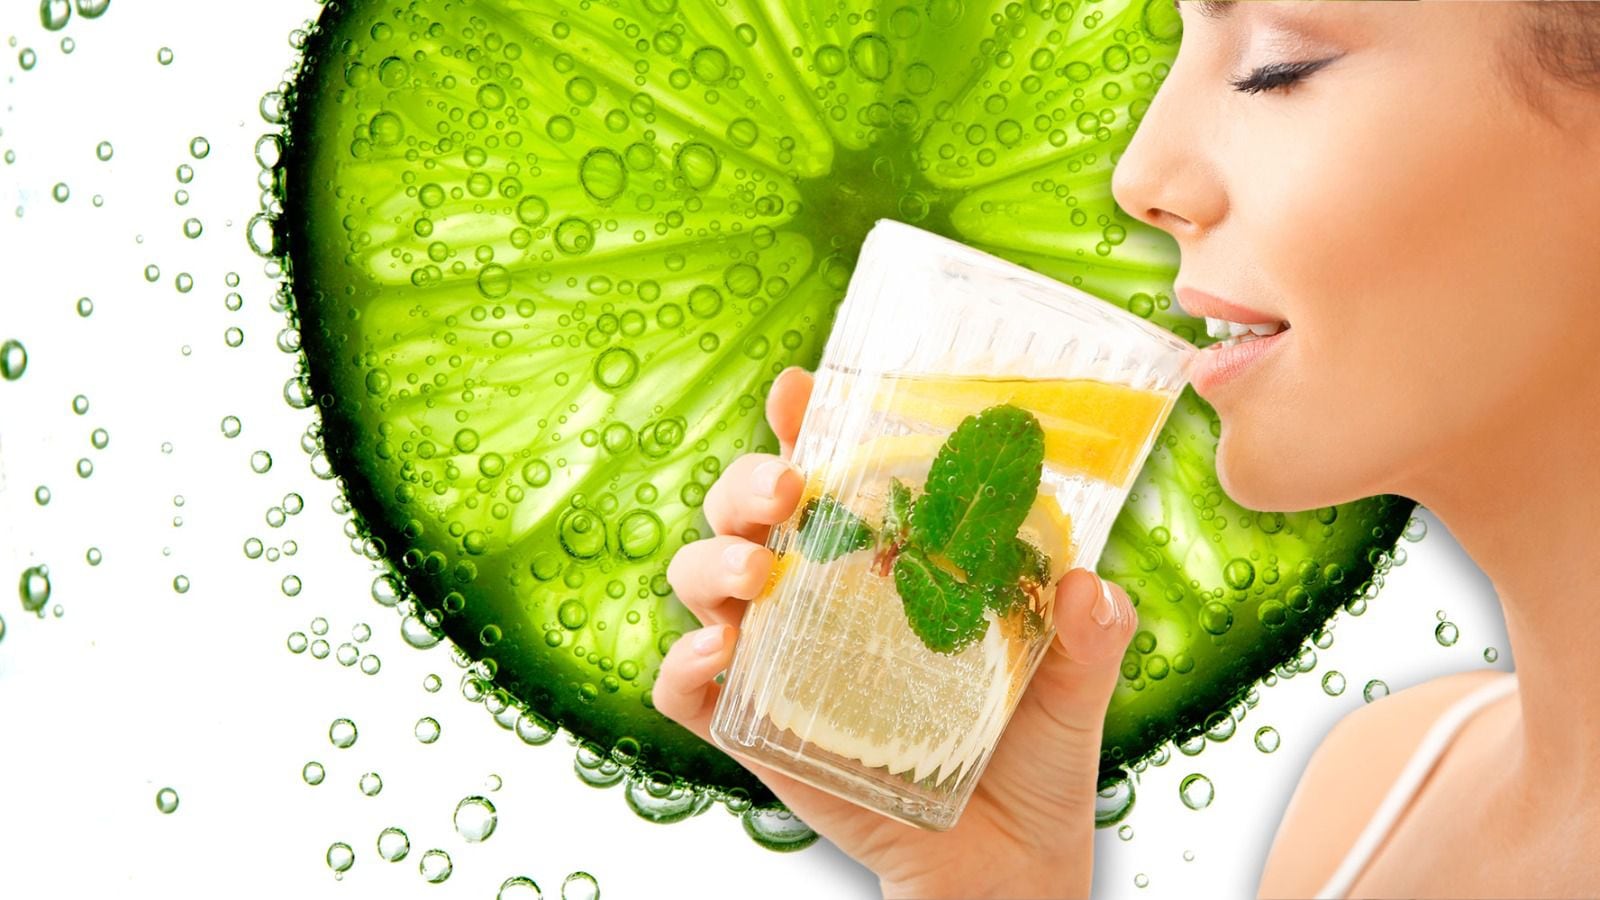 El agua con limón es un remedio casero que podría promover la ingesta de líquidos saludables. (Foto: Especial / El Financiero).